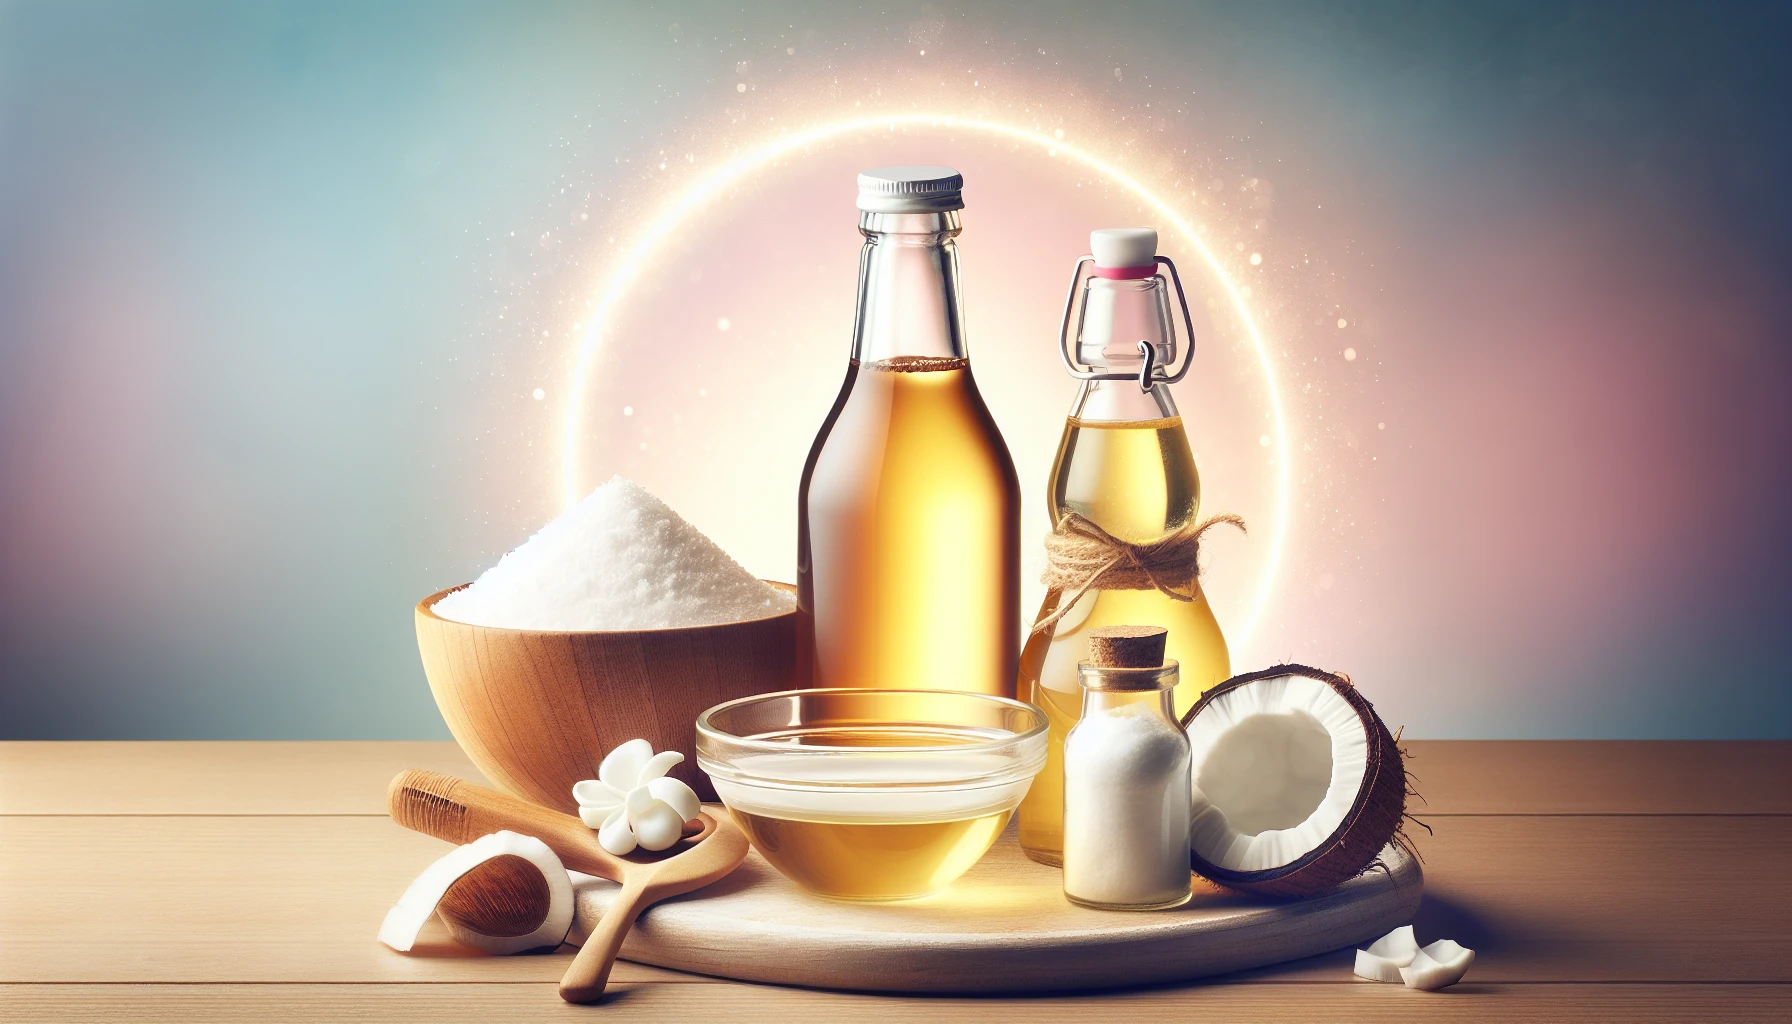 Natural ingredients for skin care including apple cider vinegar